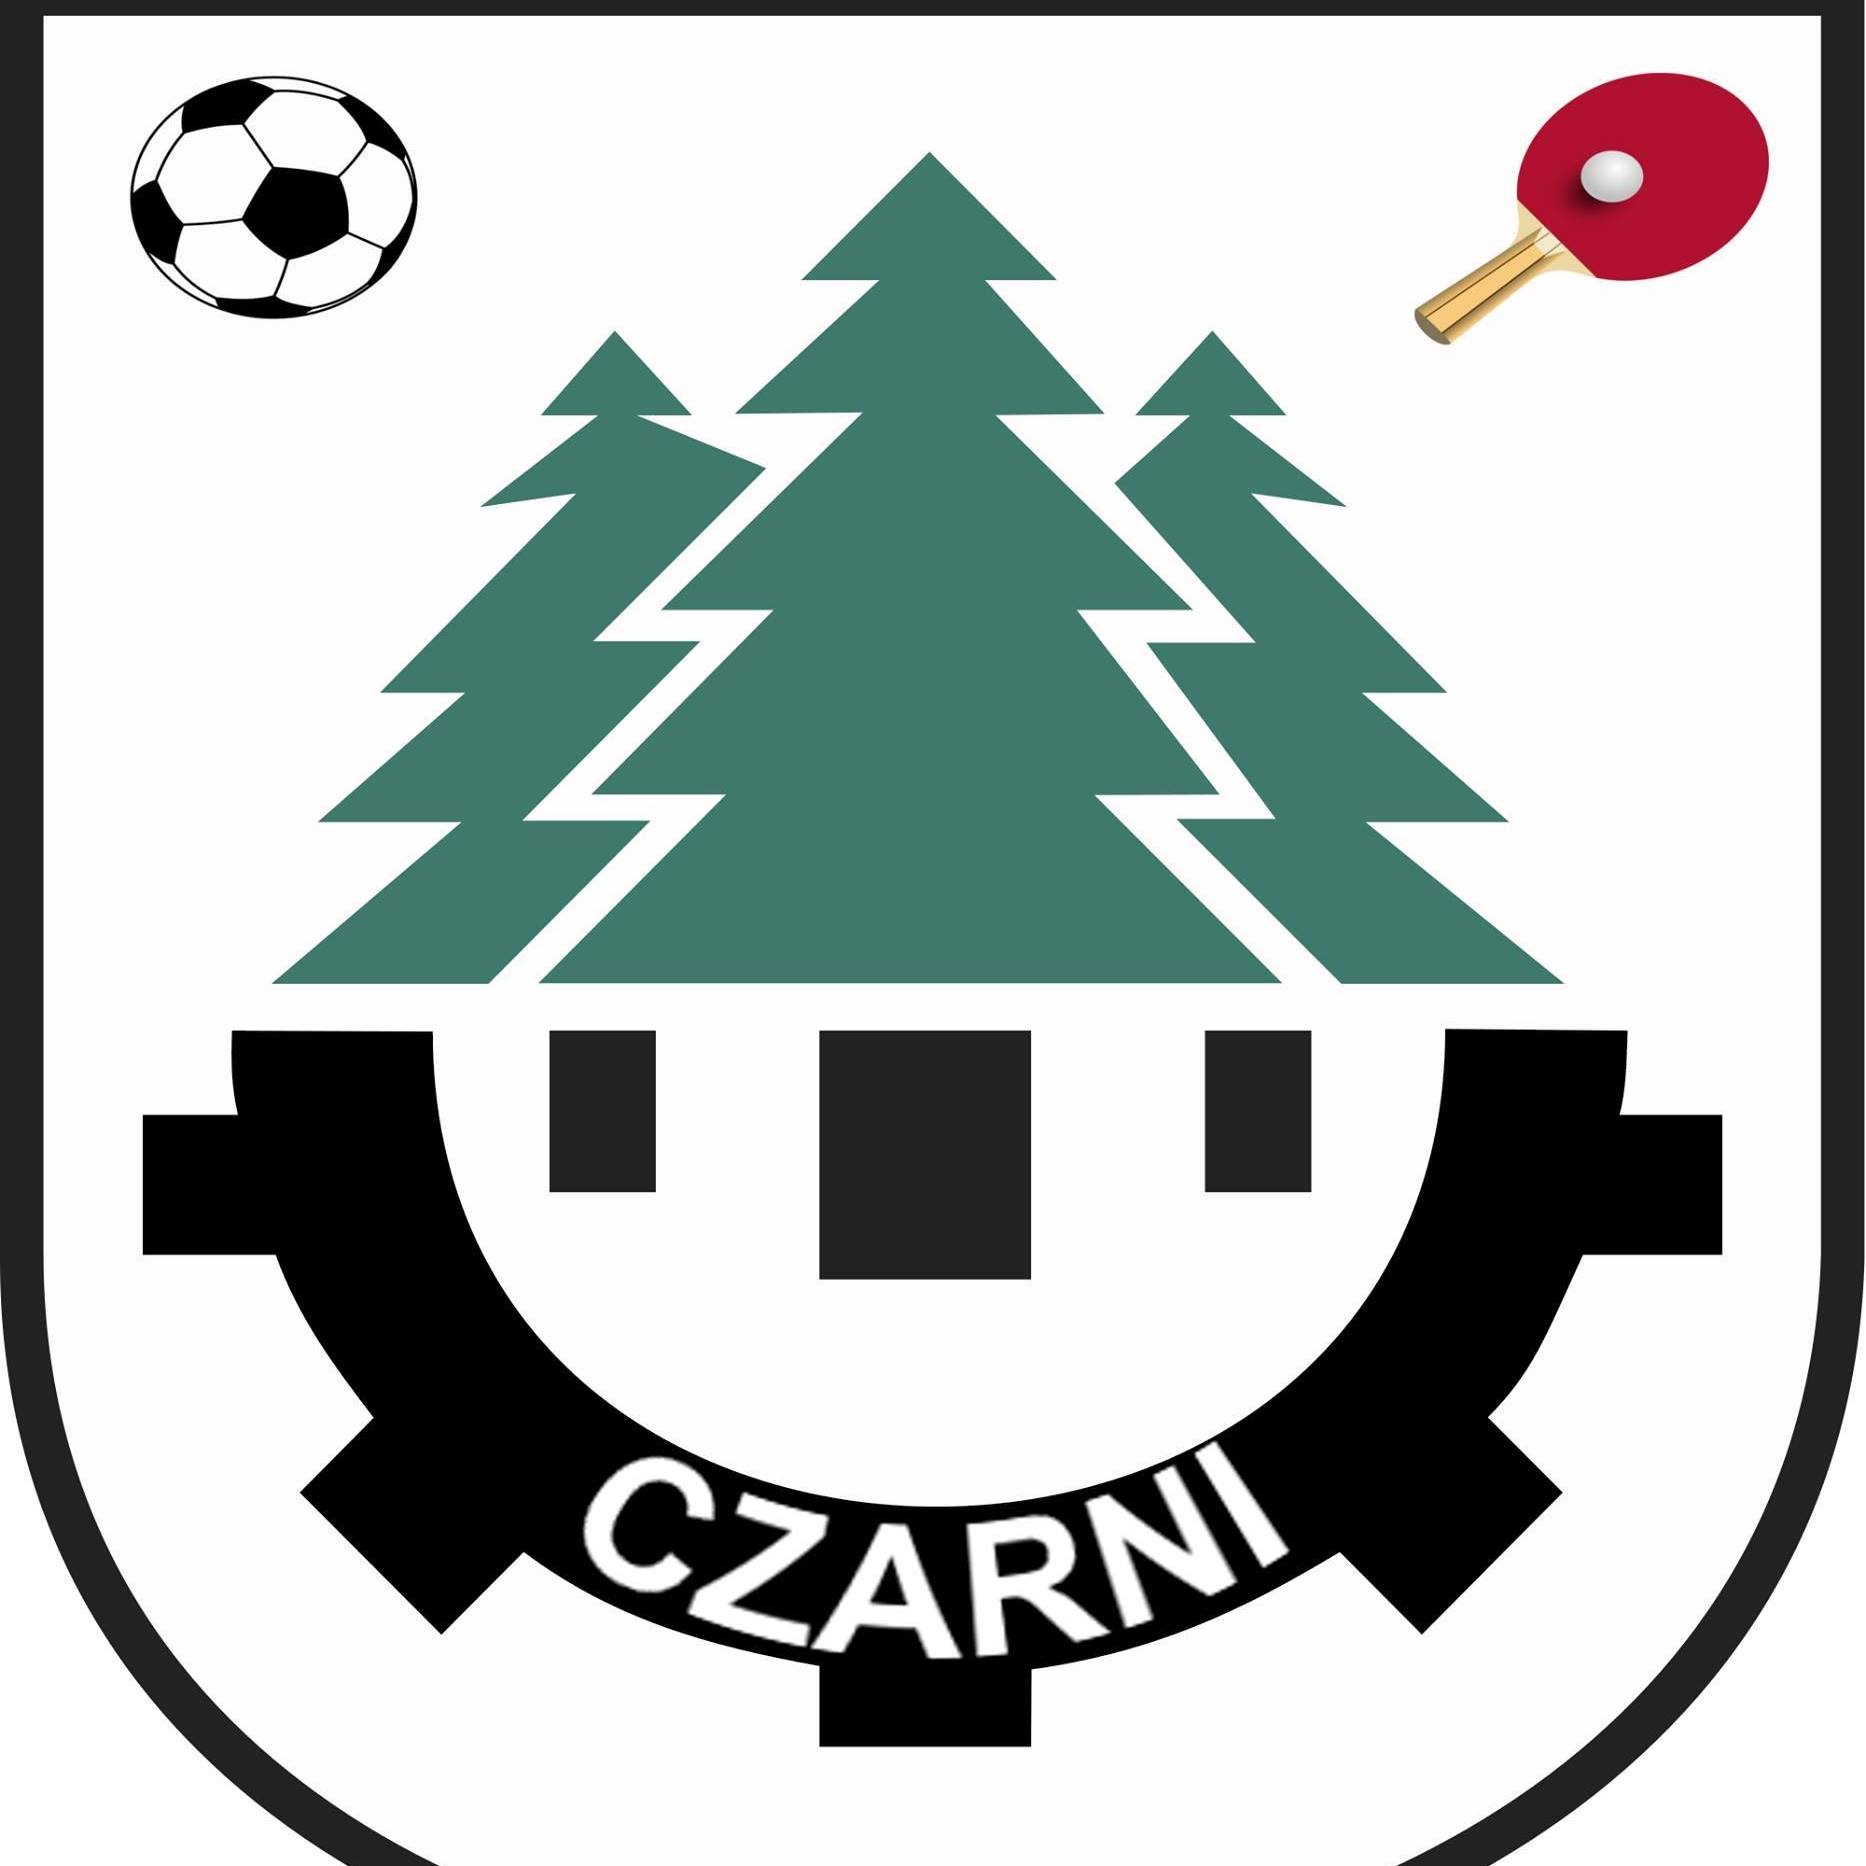 Wappen Czarni Czarna Białostocka  94494